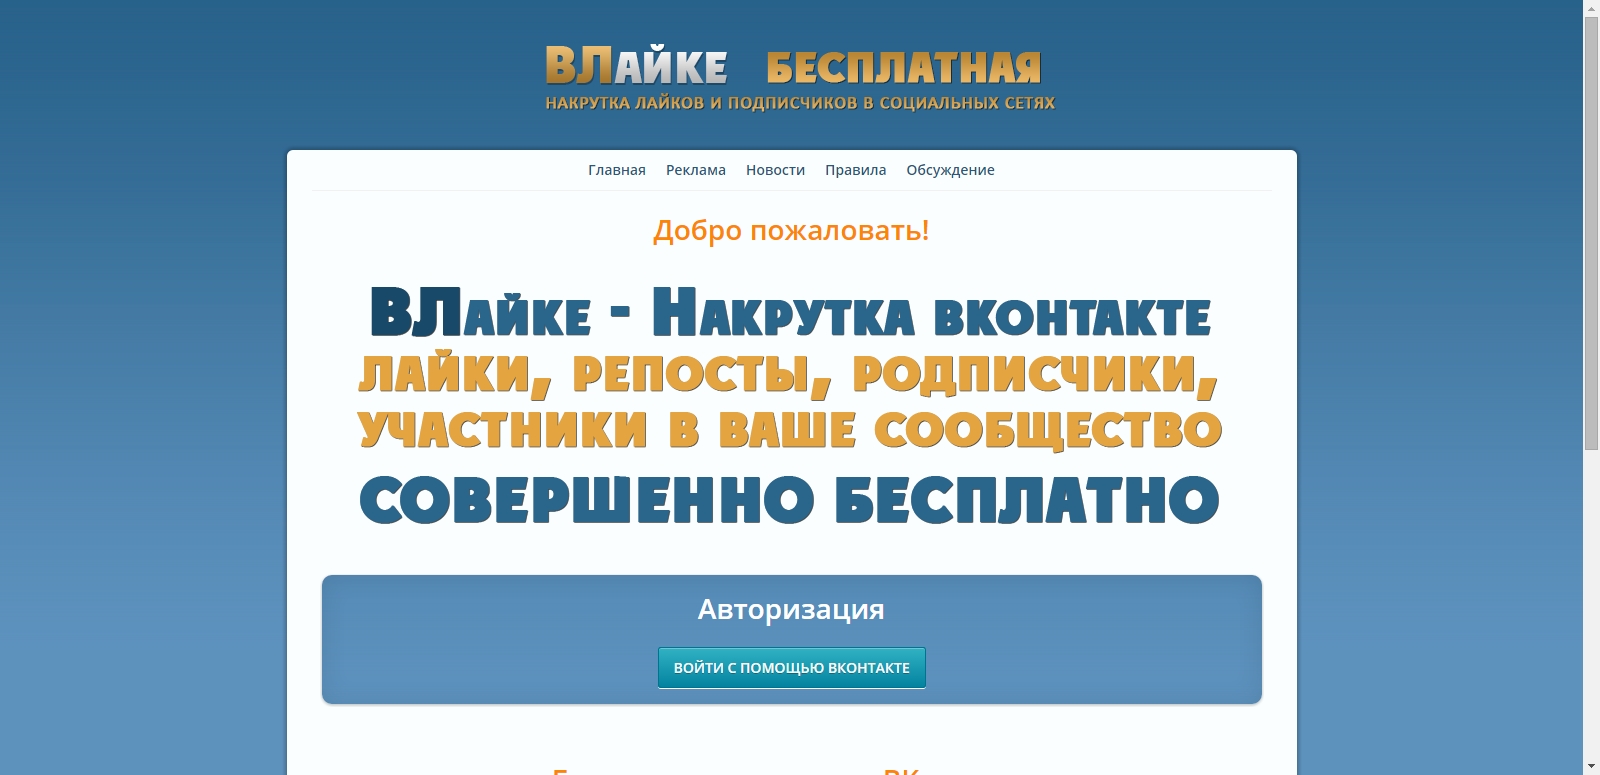 The script exchange huskies vkontakte